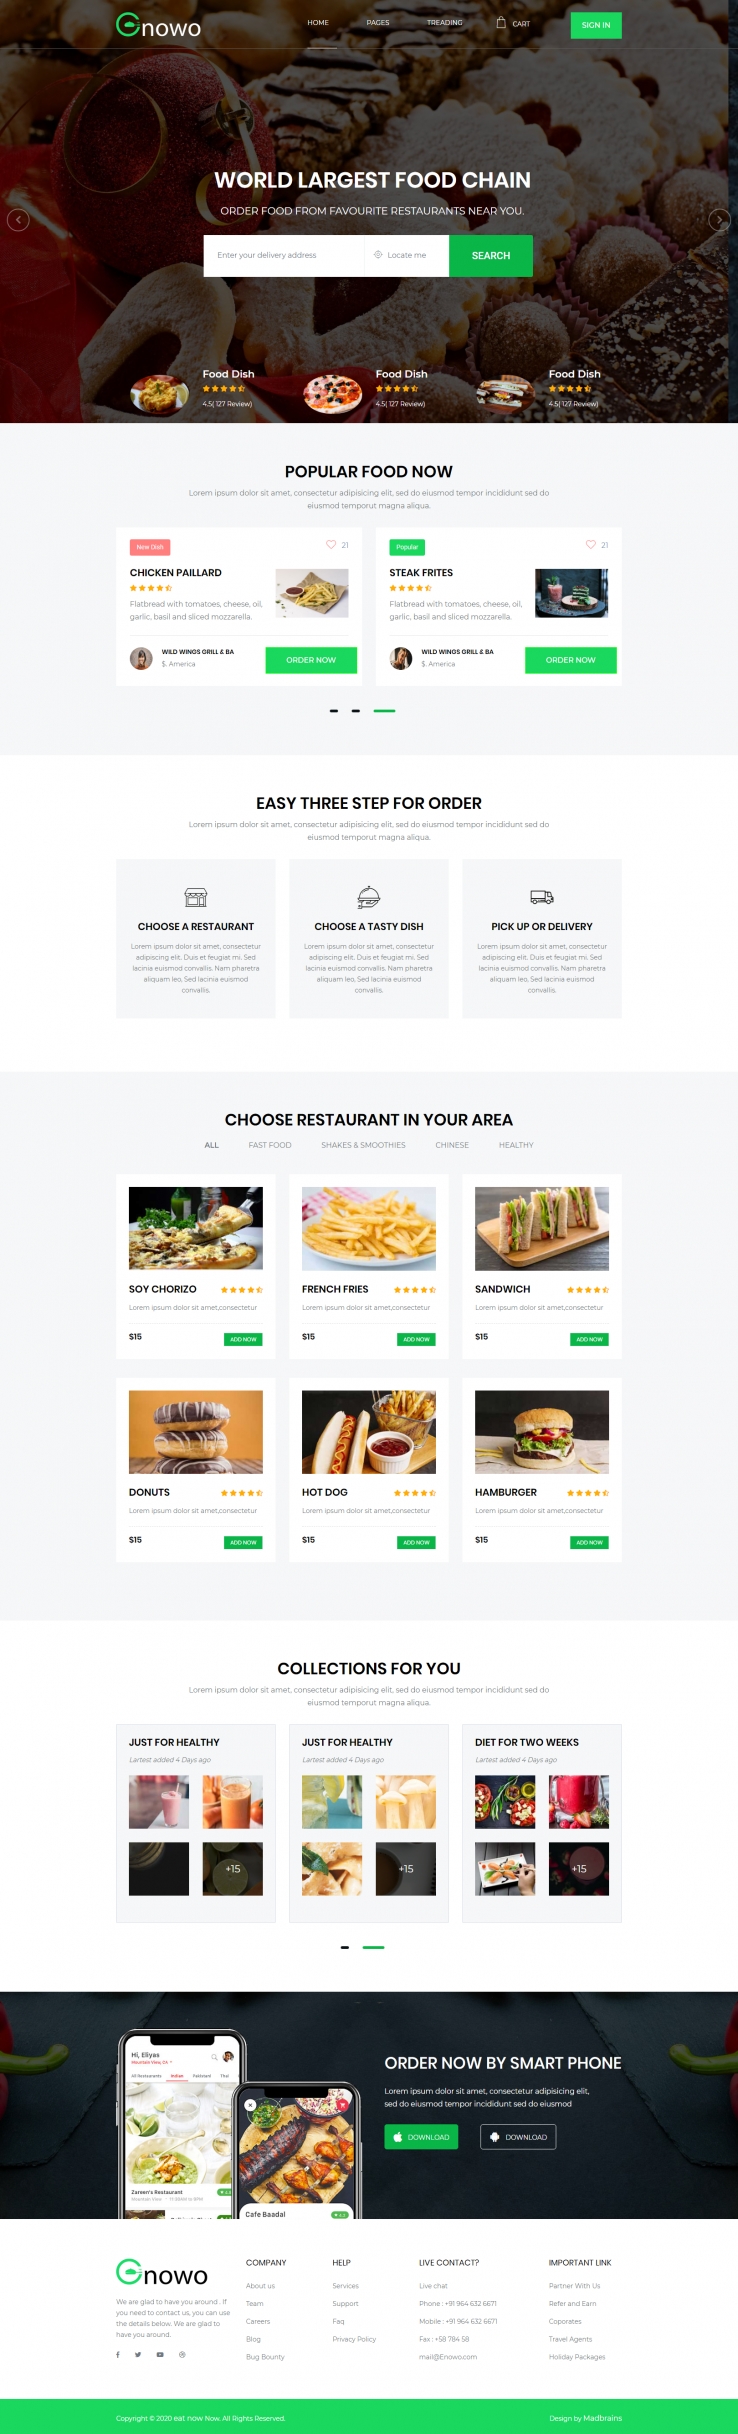 绿色欧美风格的餐饮预订下单企业网站源码下载